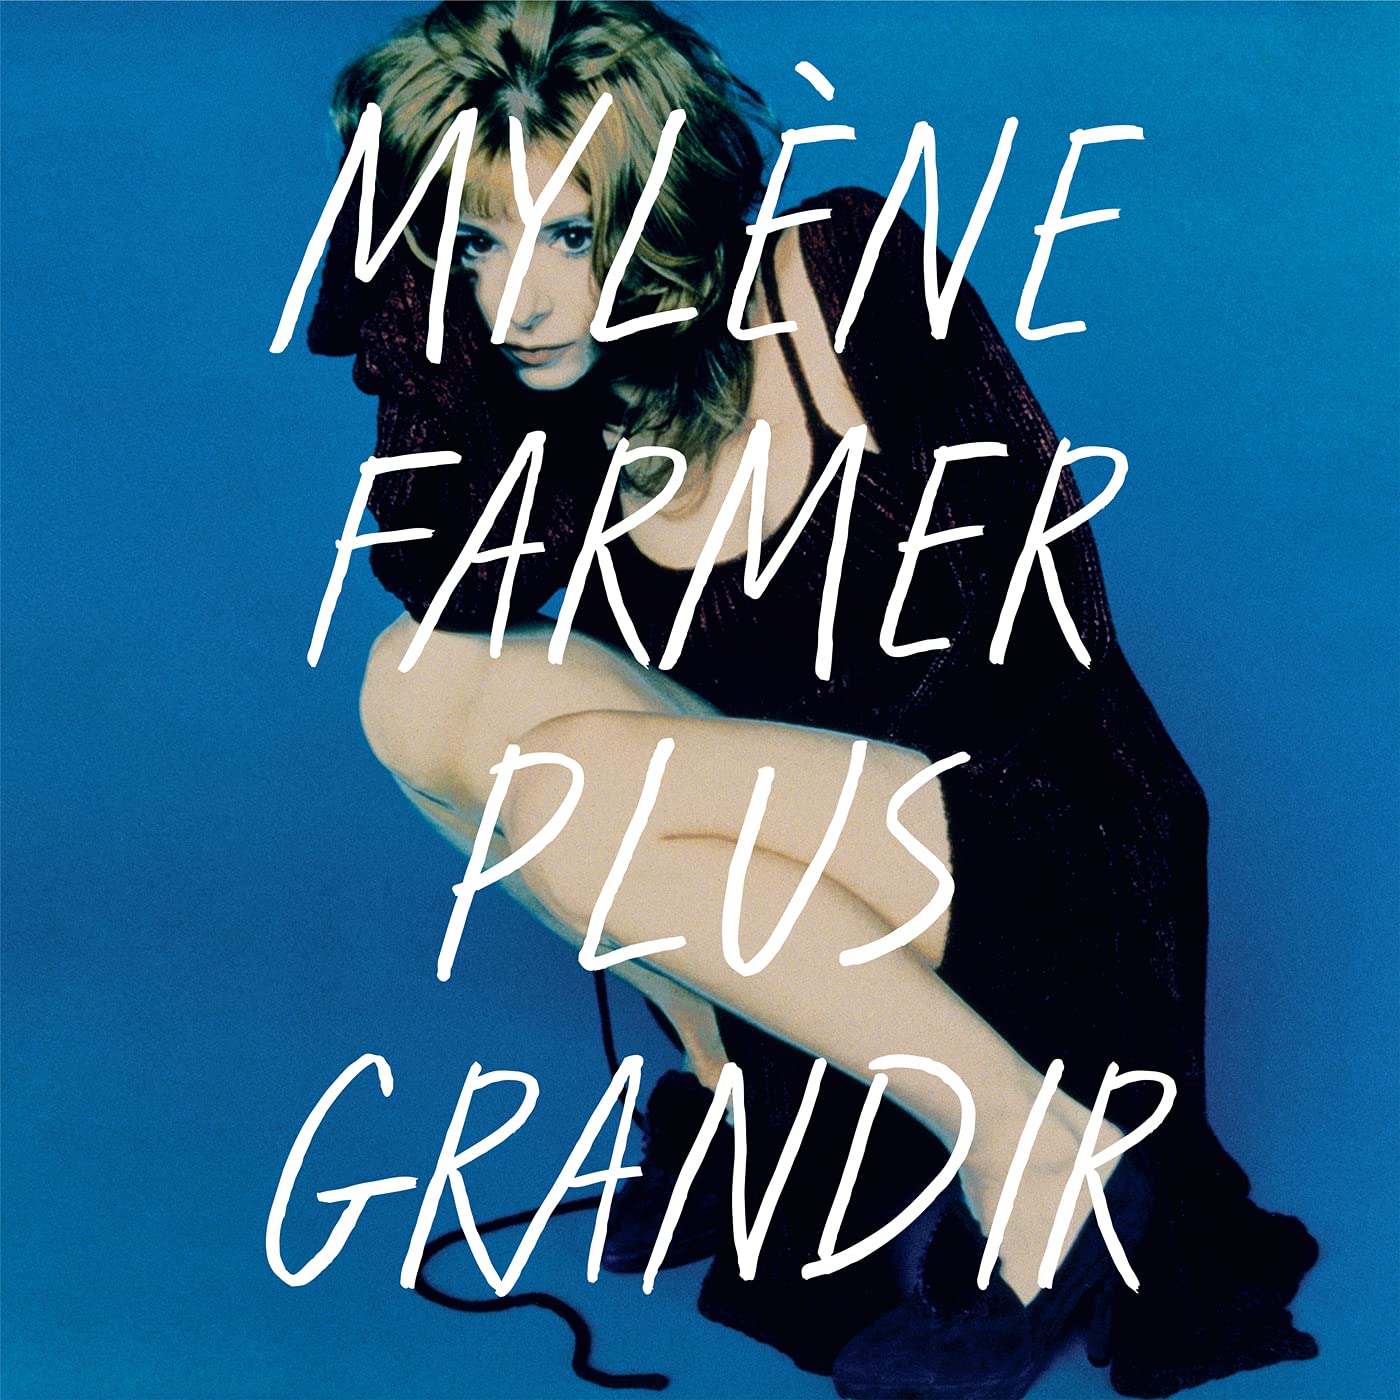 Mylene Farmer Plus Grandir Best Of 1986 - 1996 (2Винил), купить в Москве, цены в интернет-магазинах на Мегамаркет